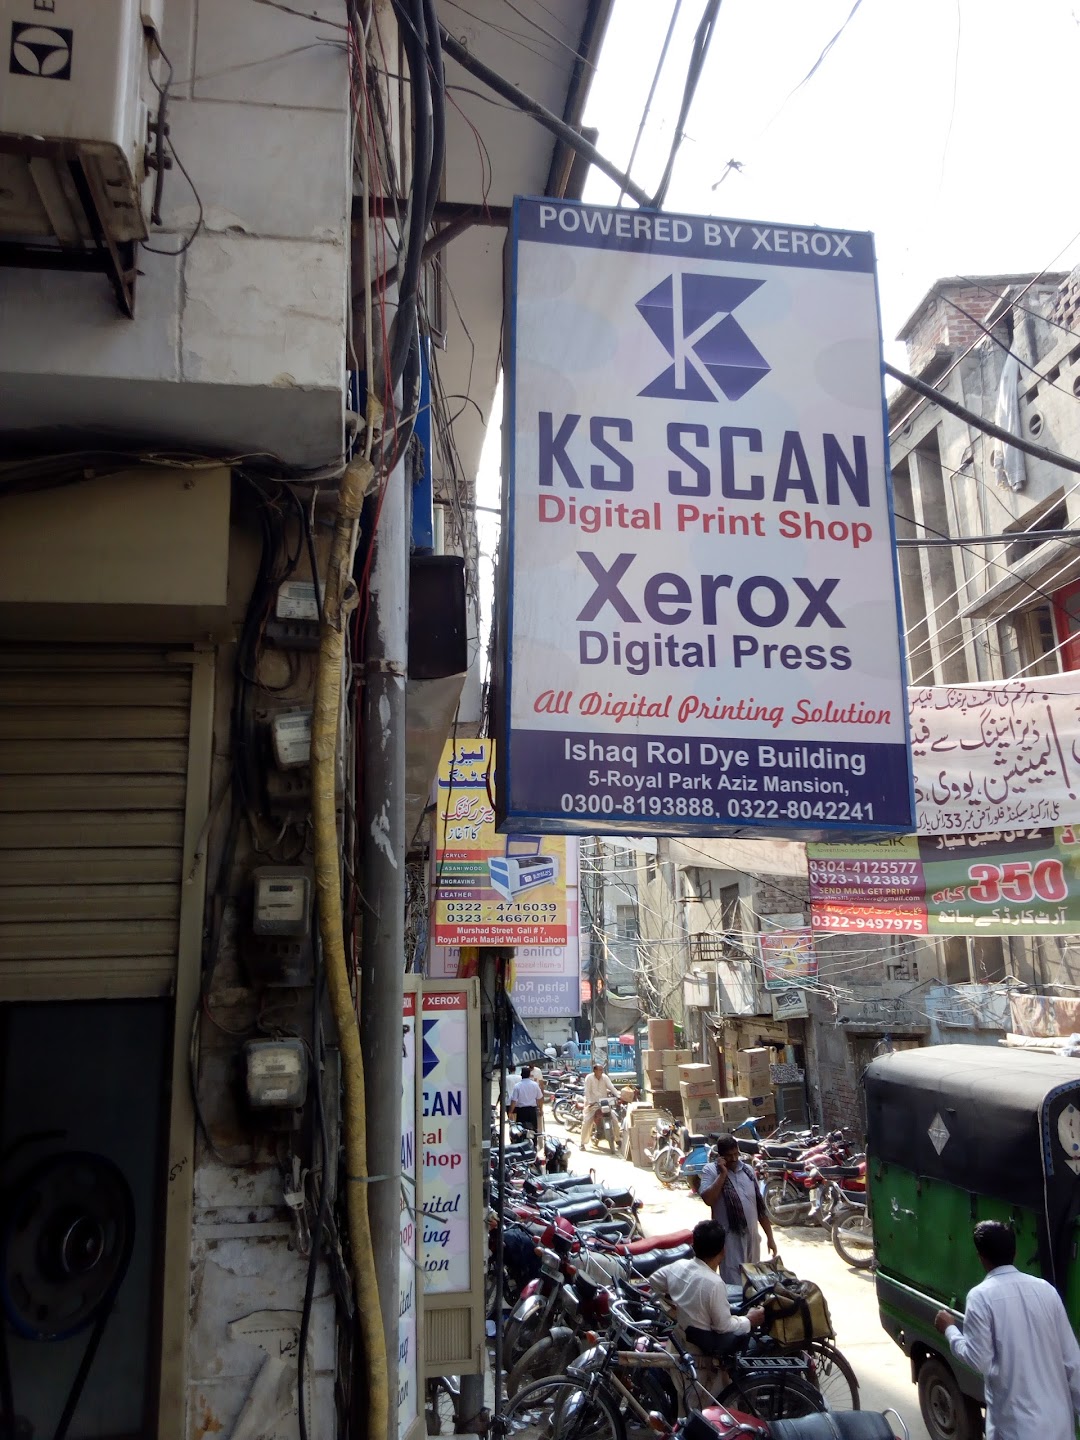 KS SCAN DIGITAL PRINT SHOP Xerox Digital Press